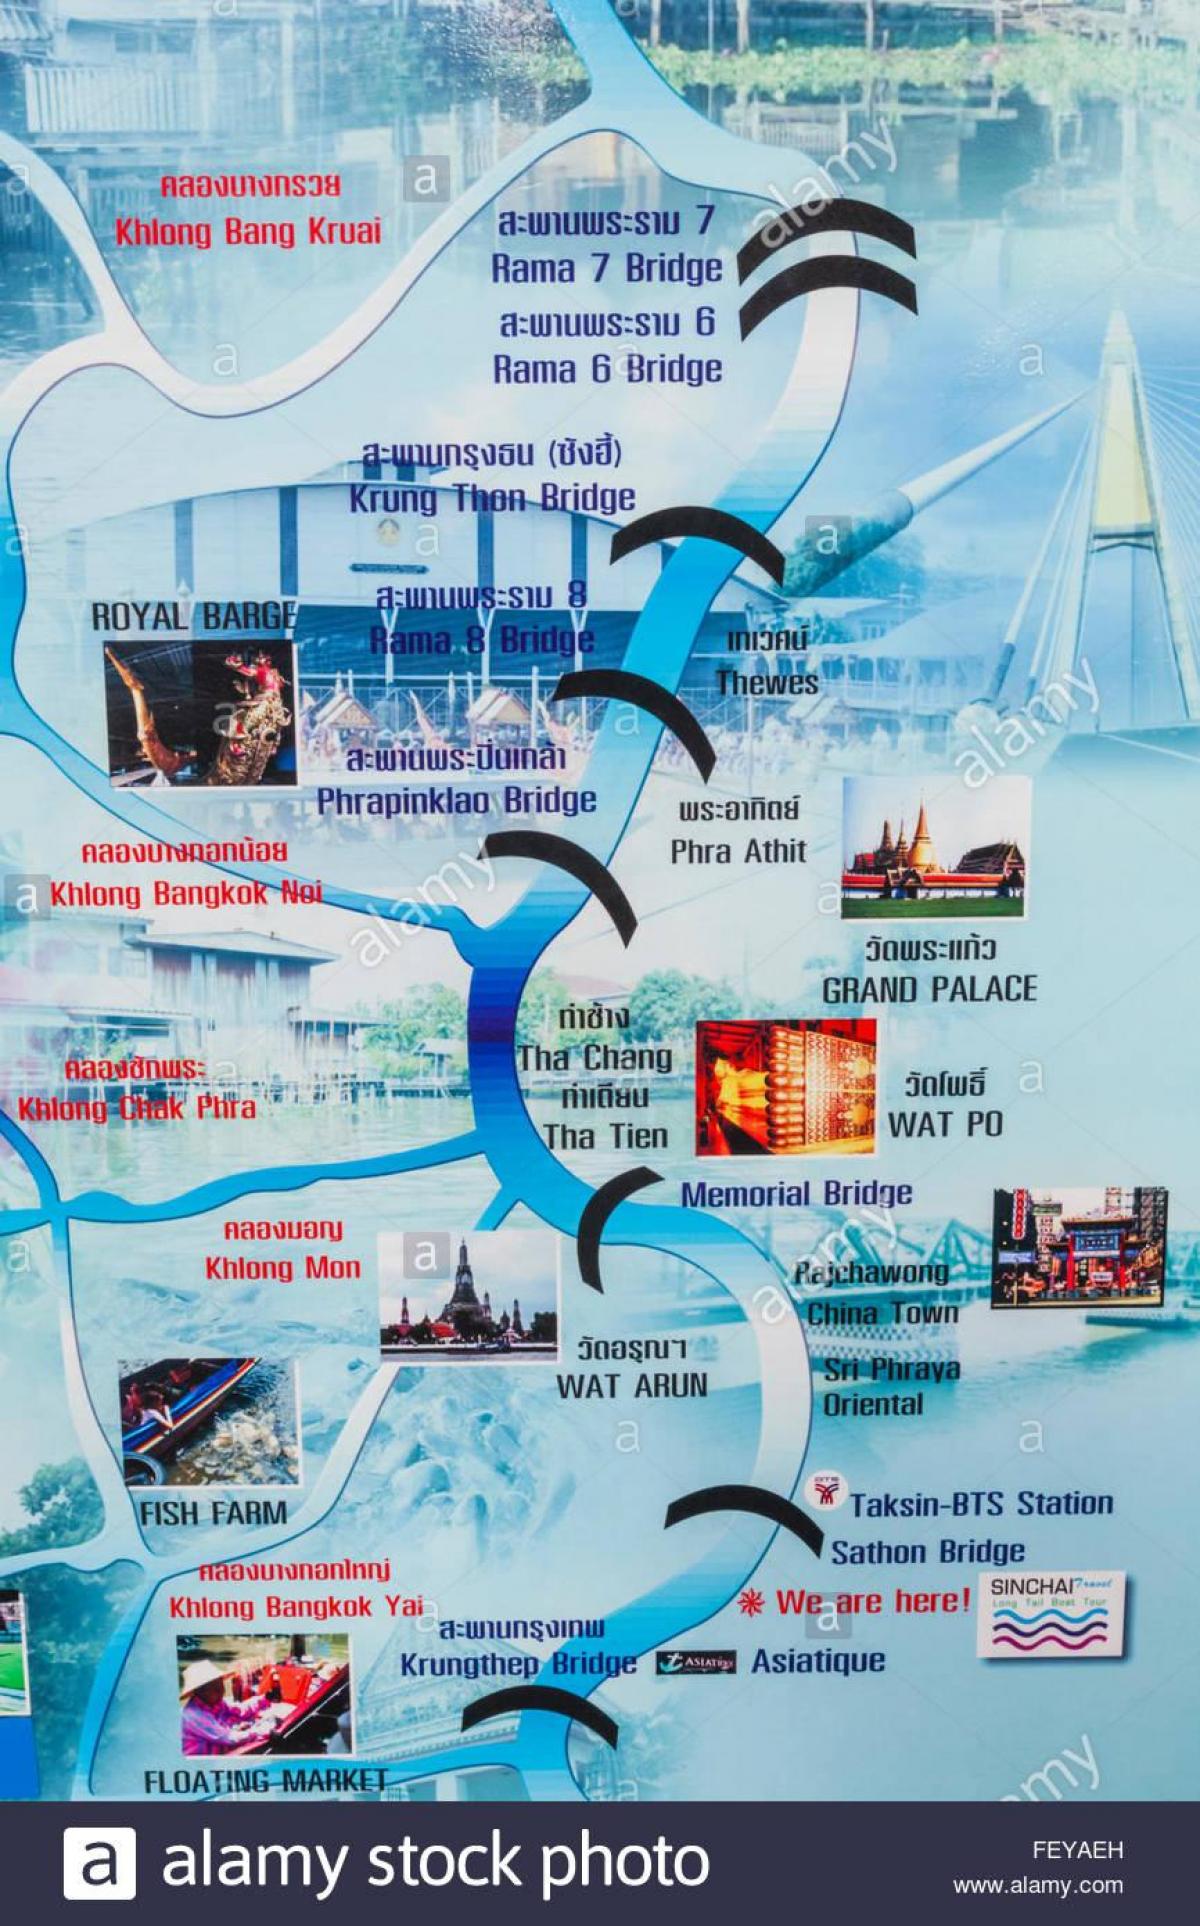 mapa do chao phraya bangkok